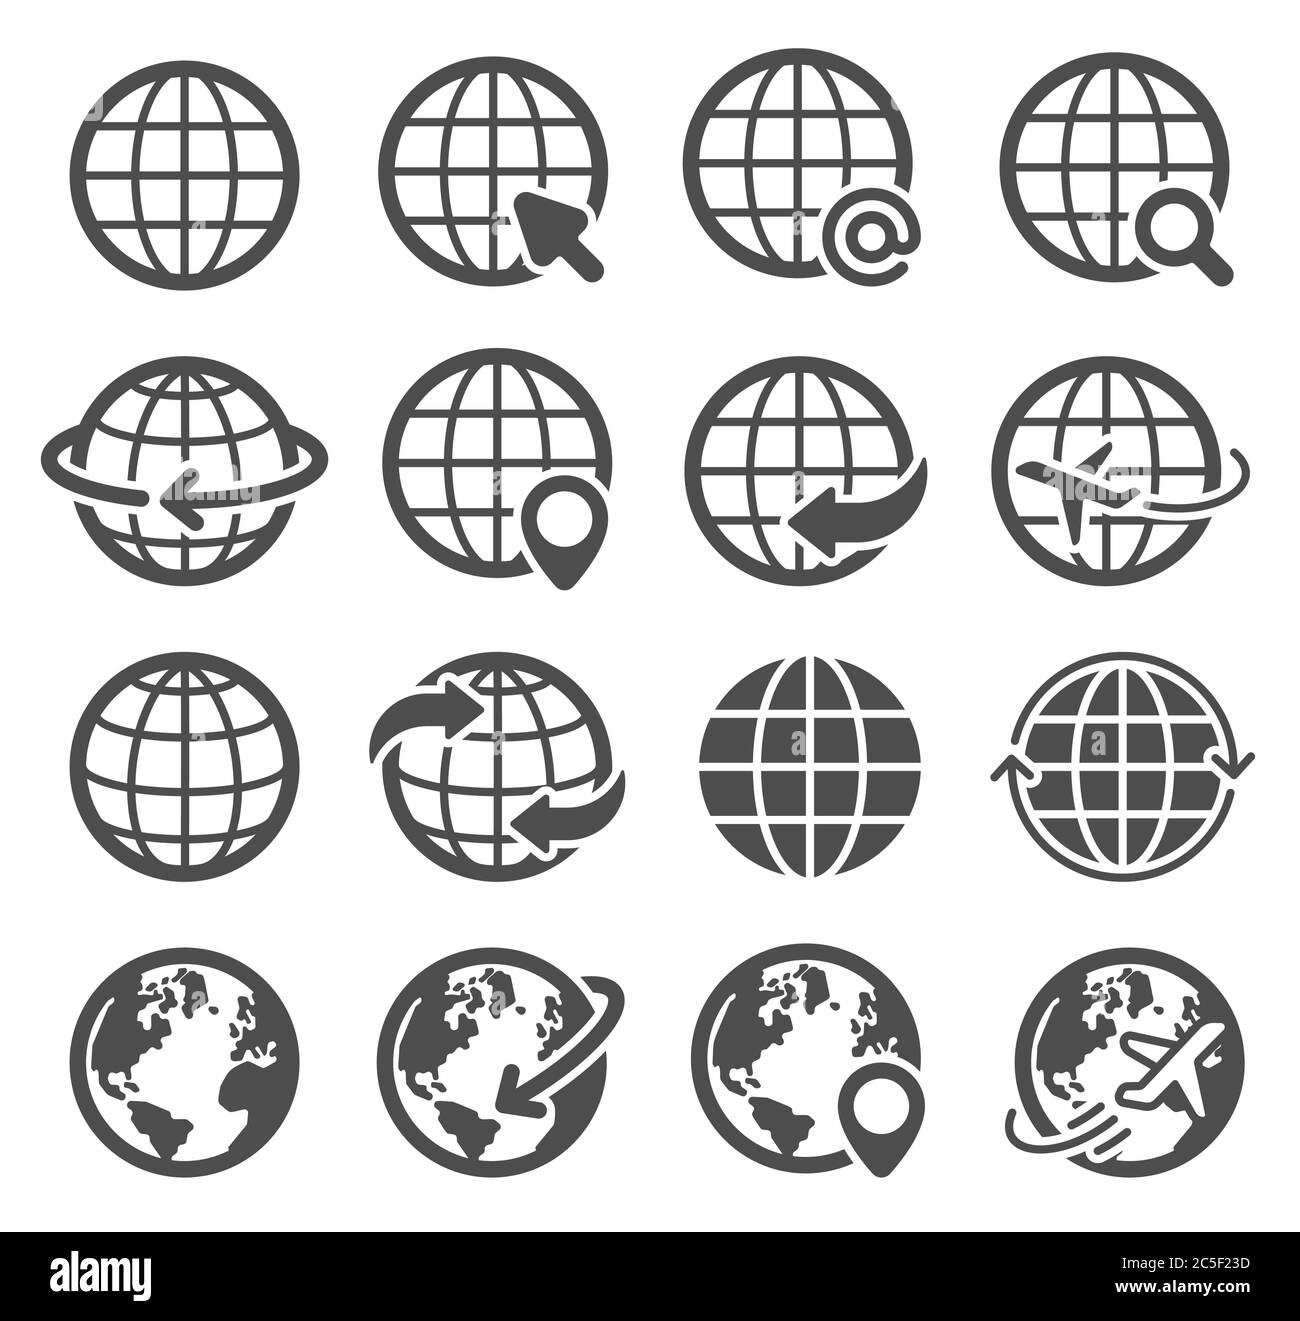 Globe Symbole gesetzt. Welt Erde, weltweite Karte Kontinente sphärischen Planeten, Internet globale Kommunikation Piktogramme, Geographie Vektor Symbole Stock Vektor